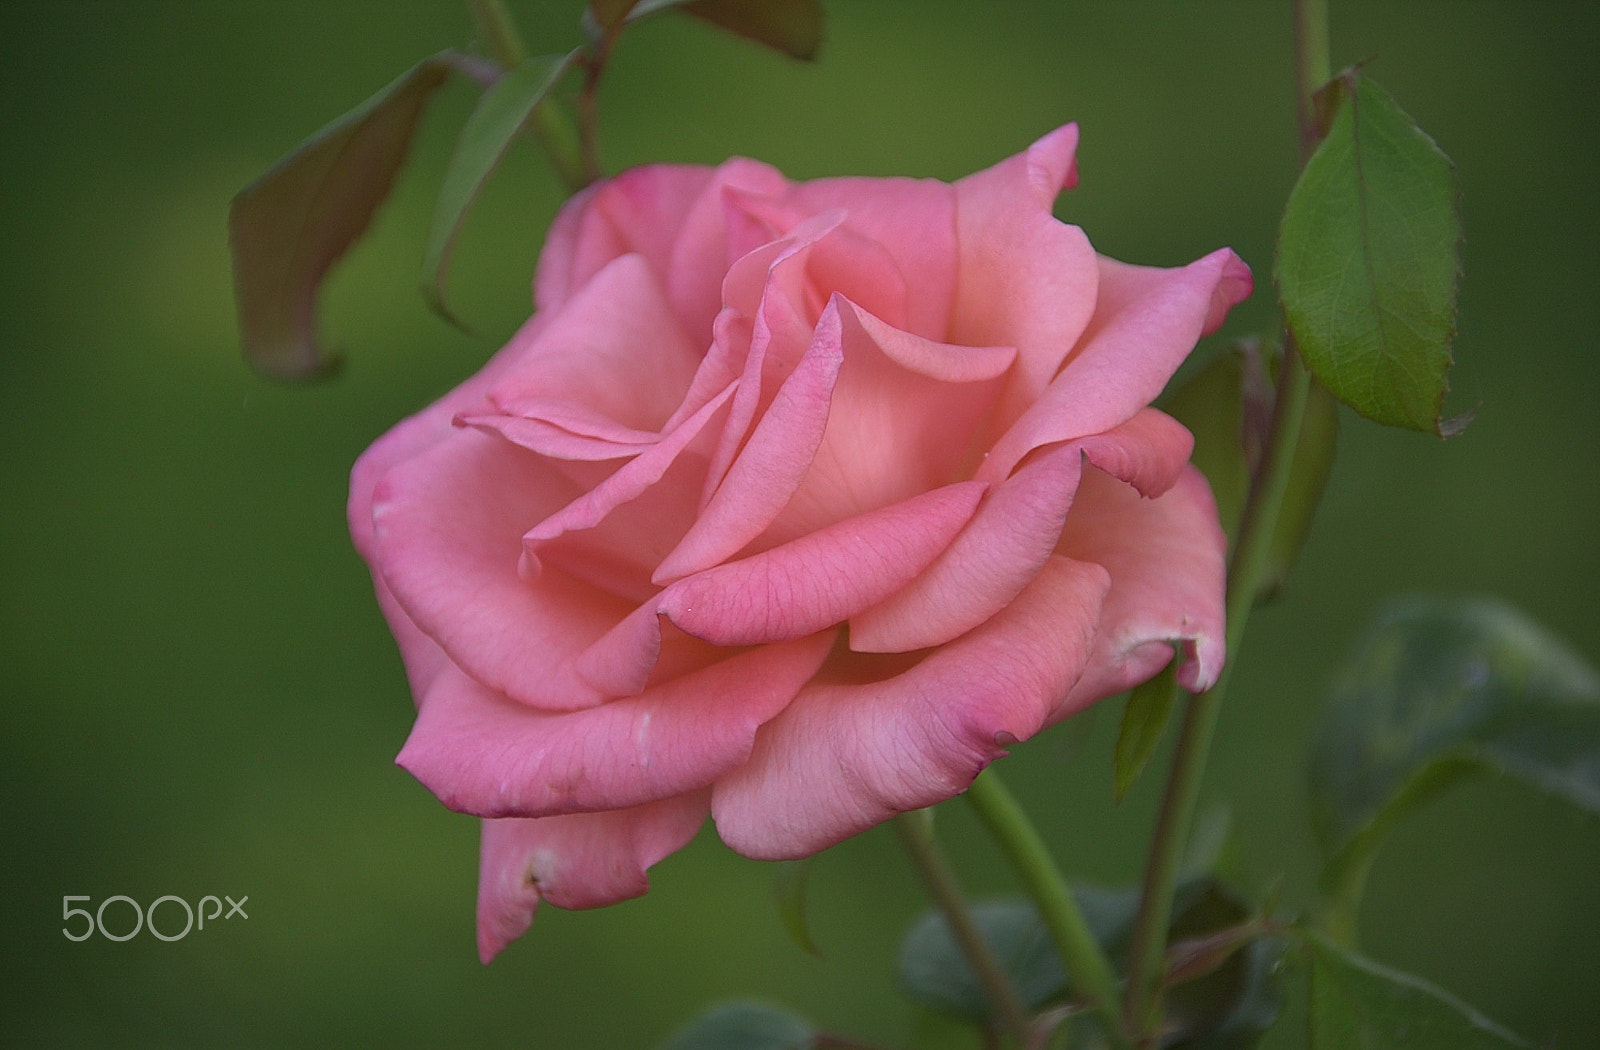 Nikon D1 sample photo. Pink rose photography